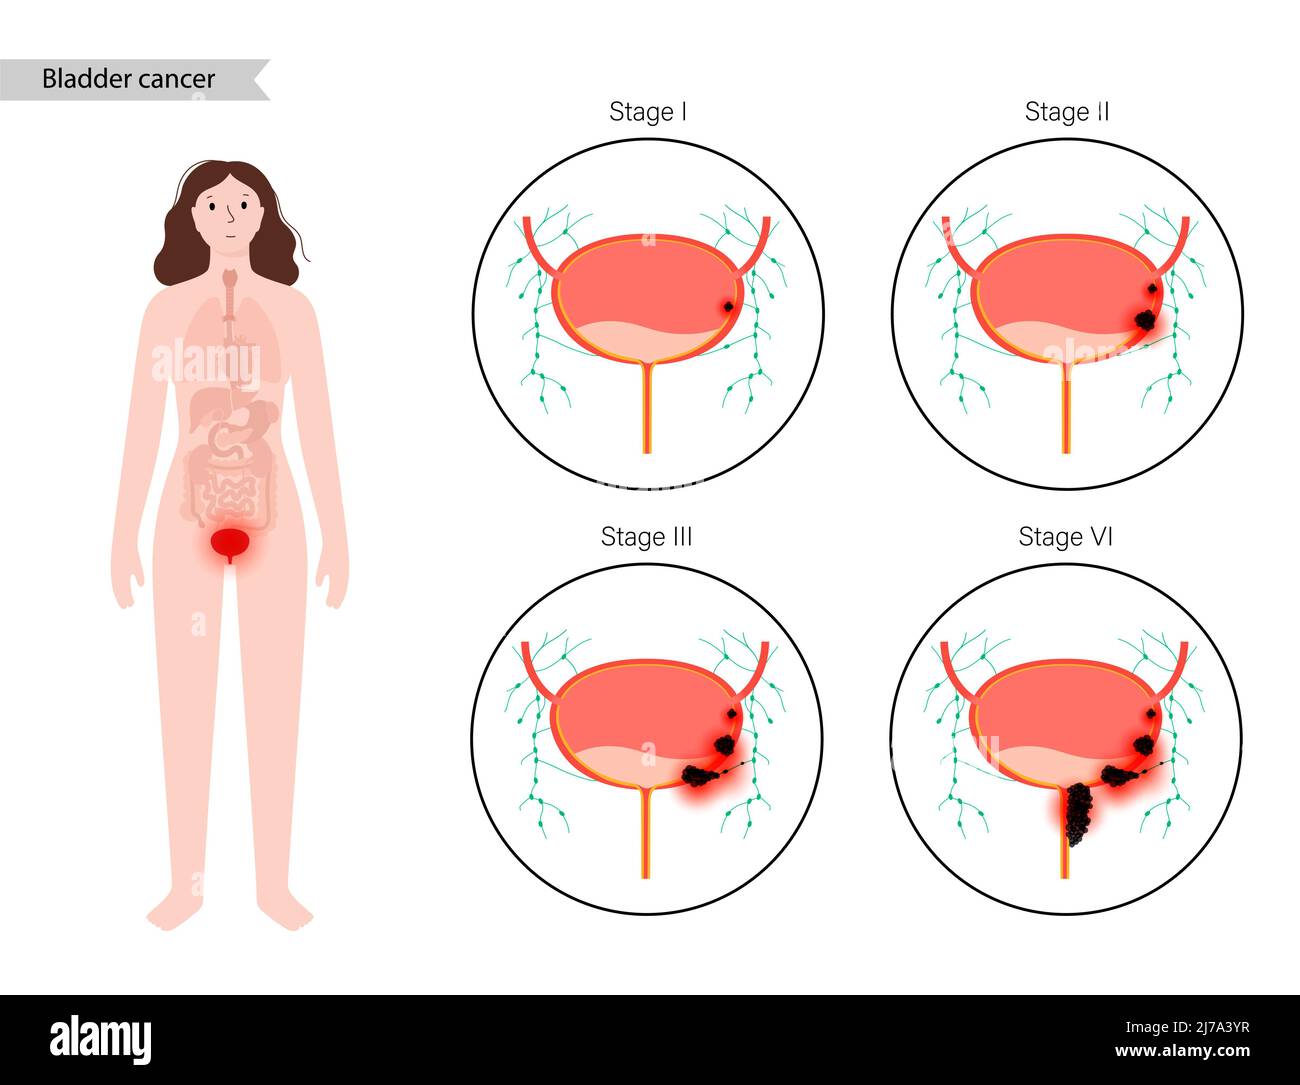 Bladder cancer stages, illustration Stock Photo